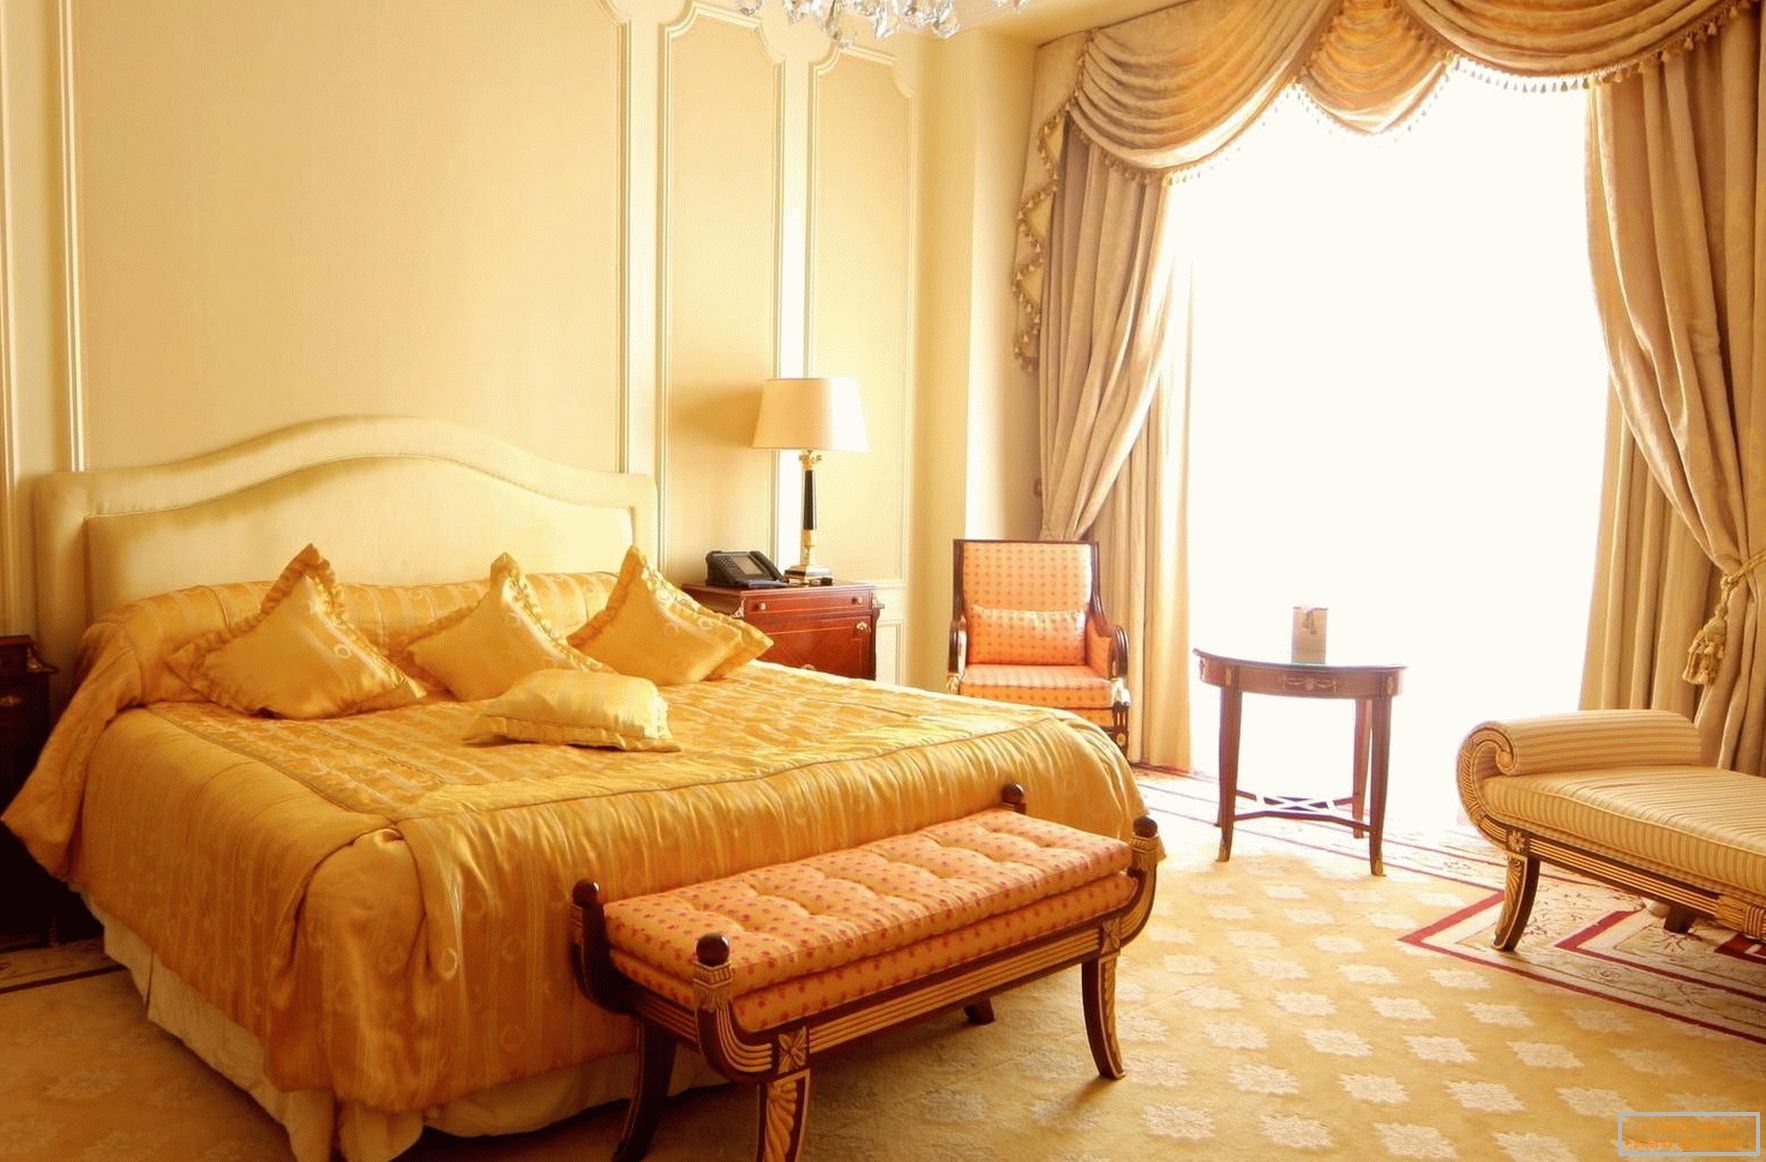 Luminoso y espacioso dormitorio barroco con ventanas panorámicas. 